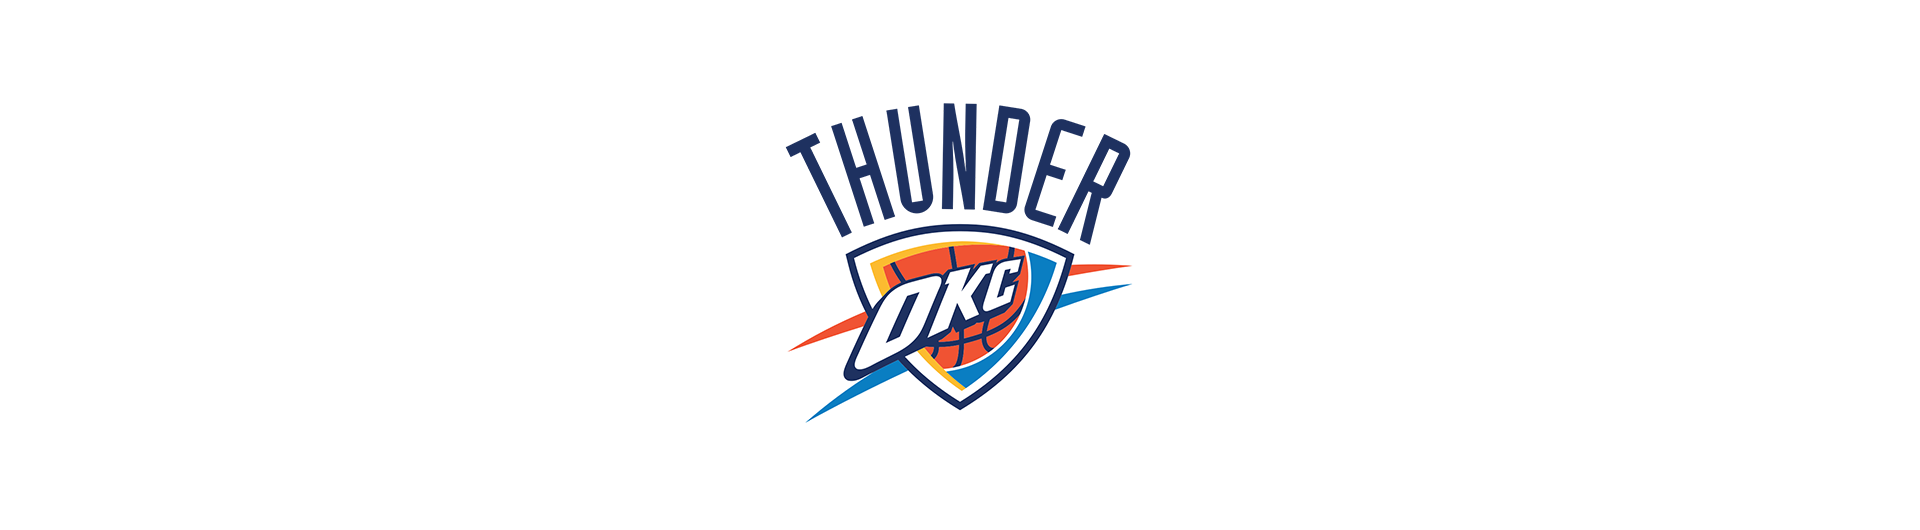 Oklahoma City Thunder (OKC)